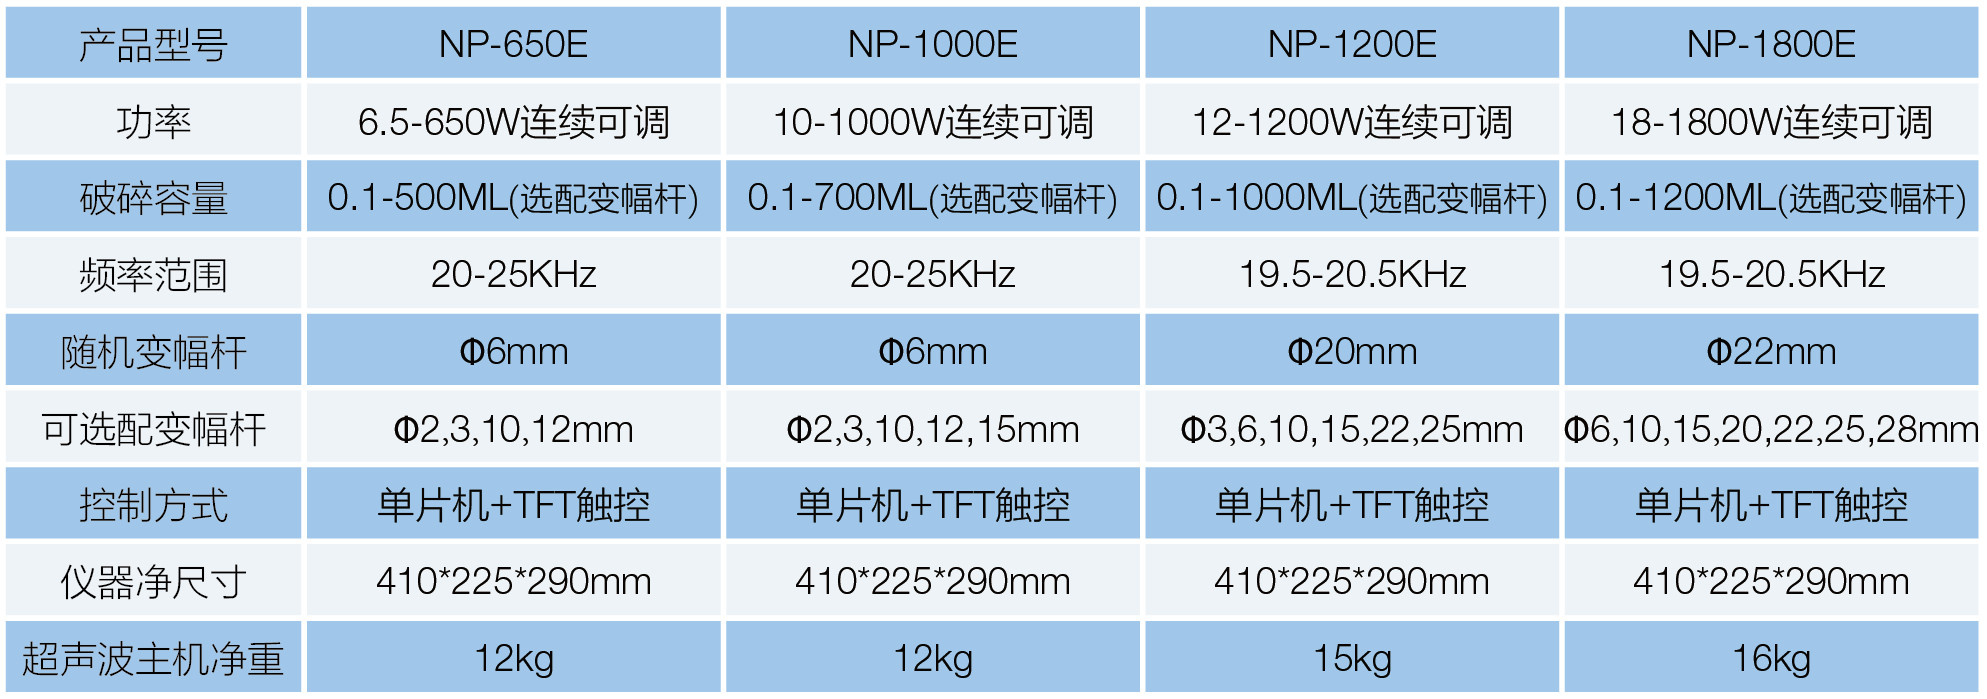 NP-1200E超声波细胞破坏机(图1)